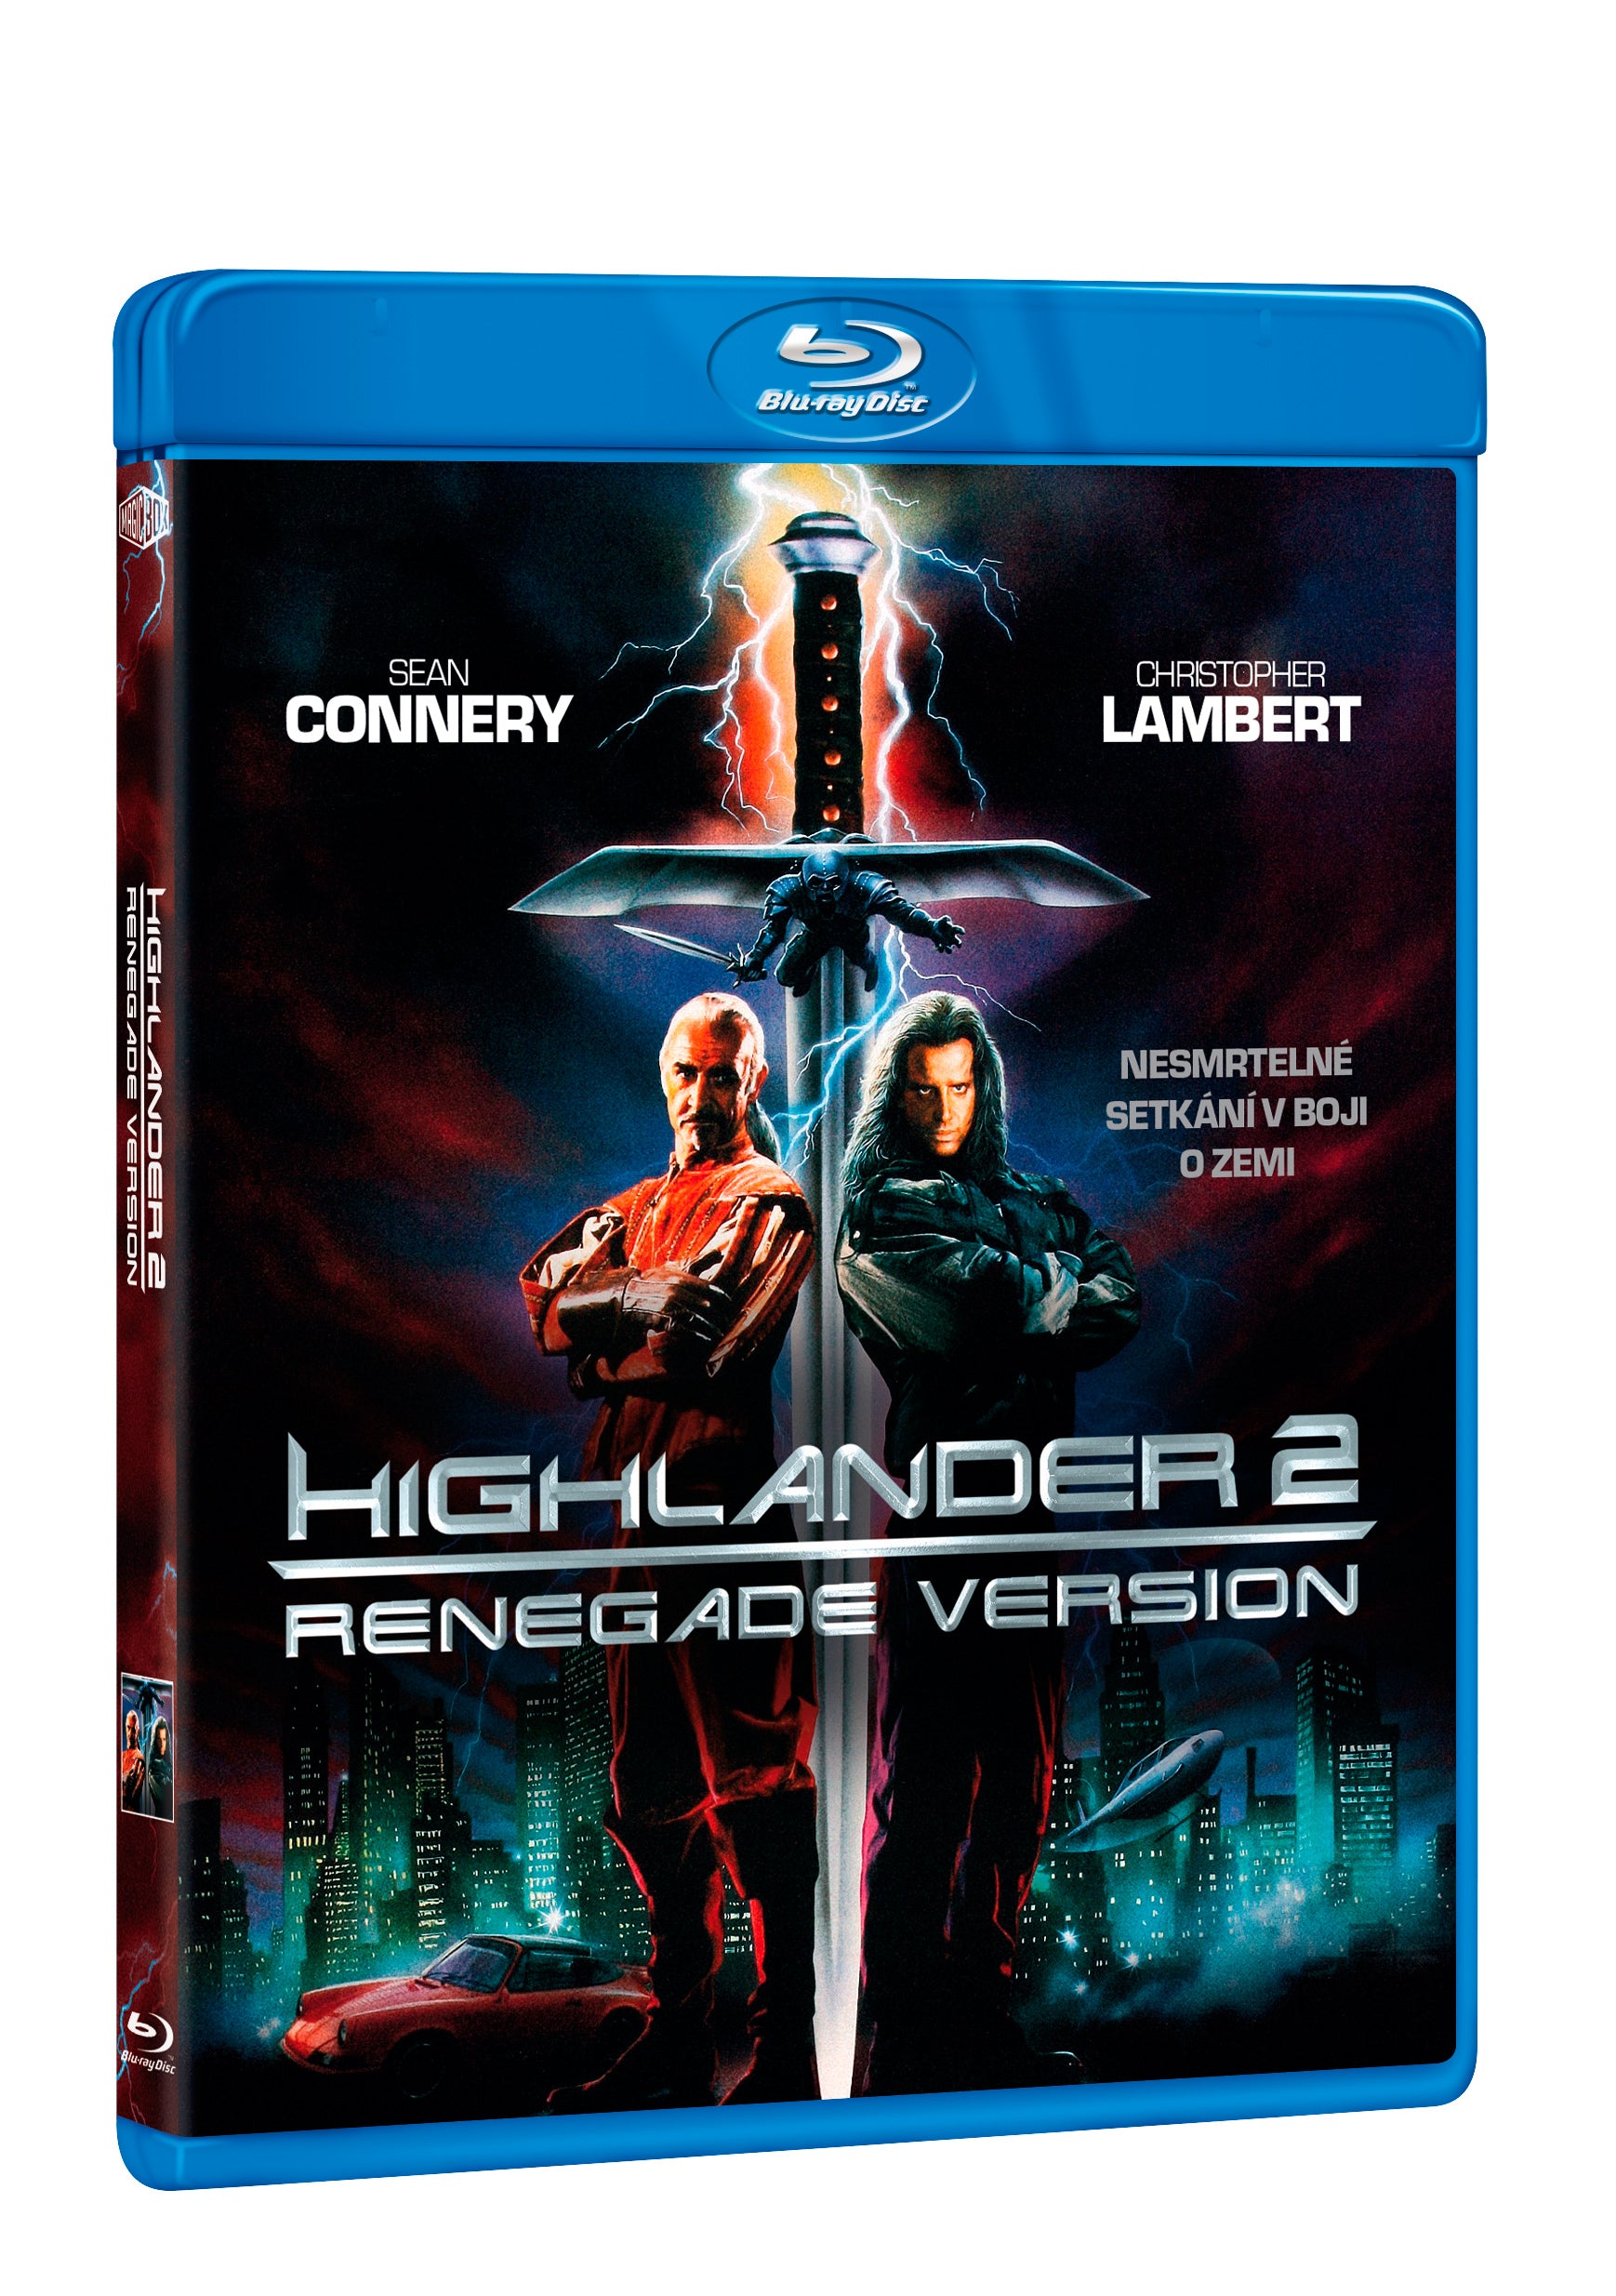 Highlander 2 - Renegade Version BD / Highlander 2 - Renegade Version - Czech version